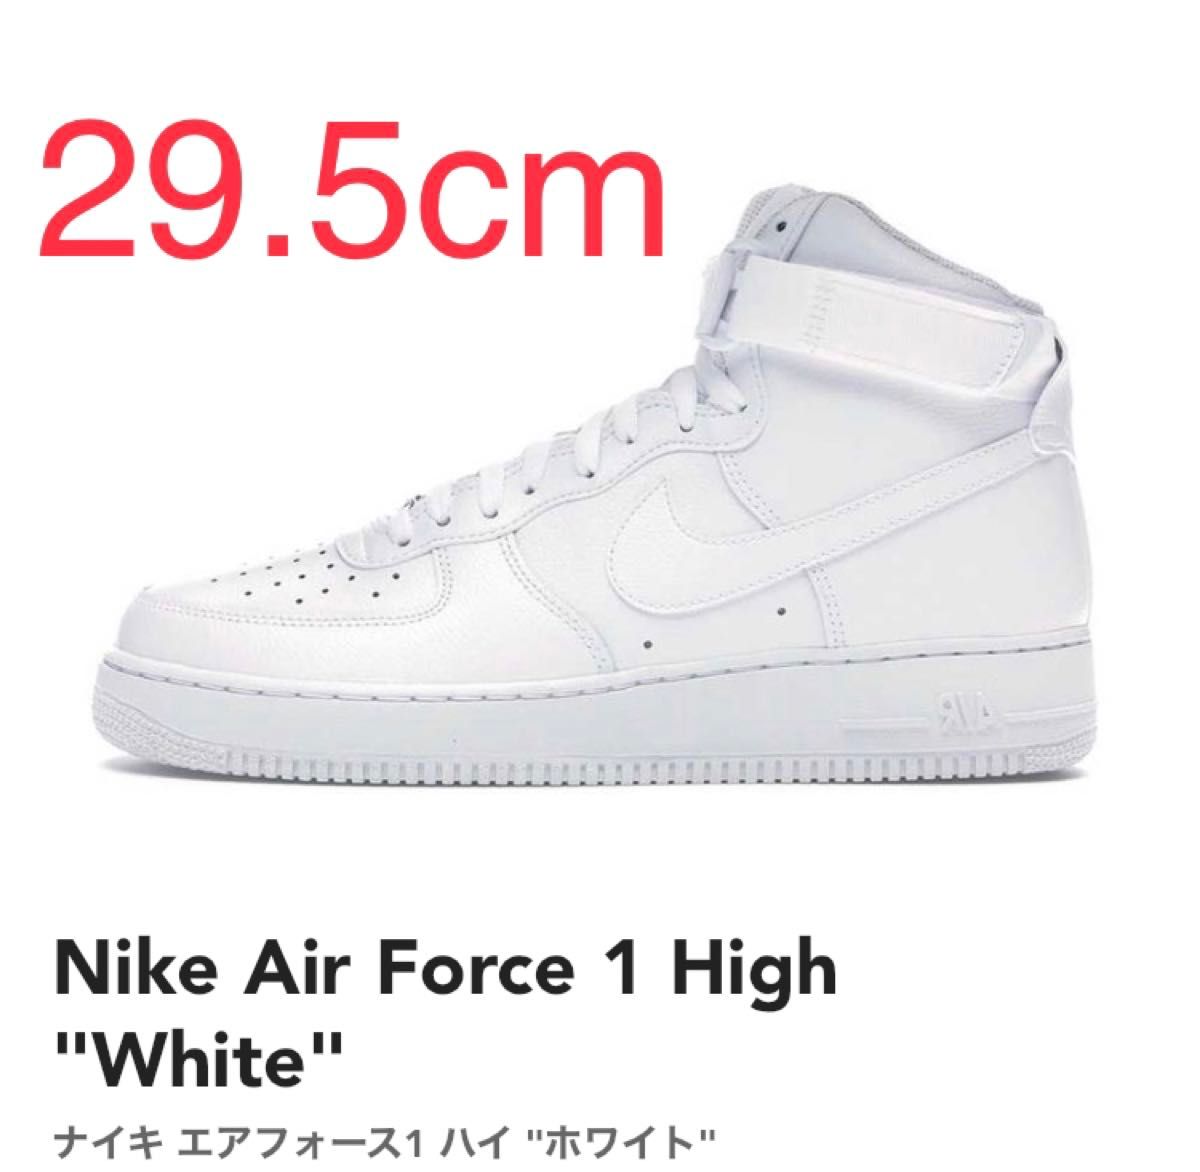 Nike Air Force 1 High "White"29.5